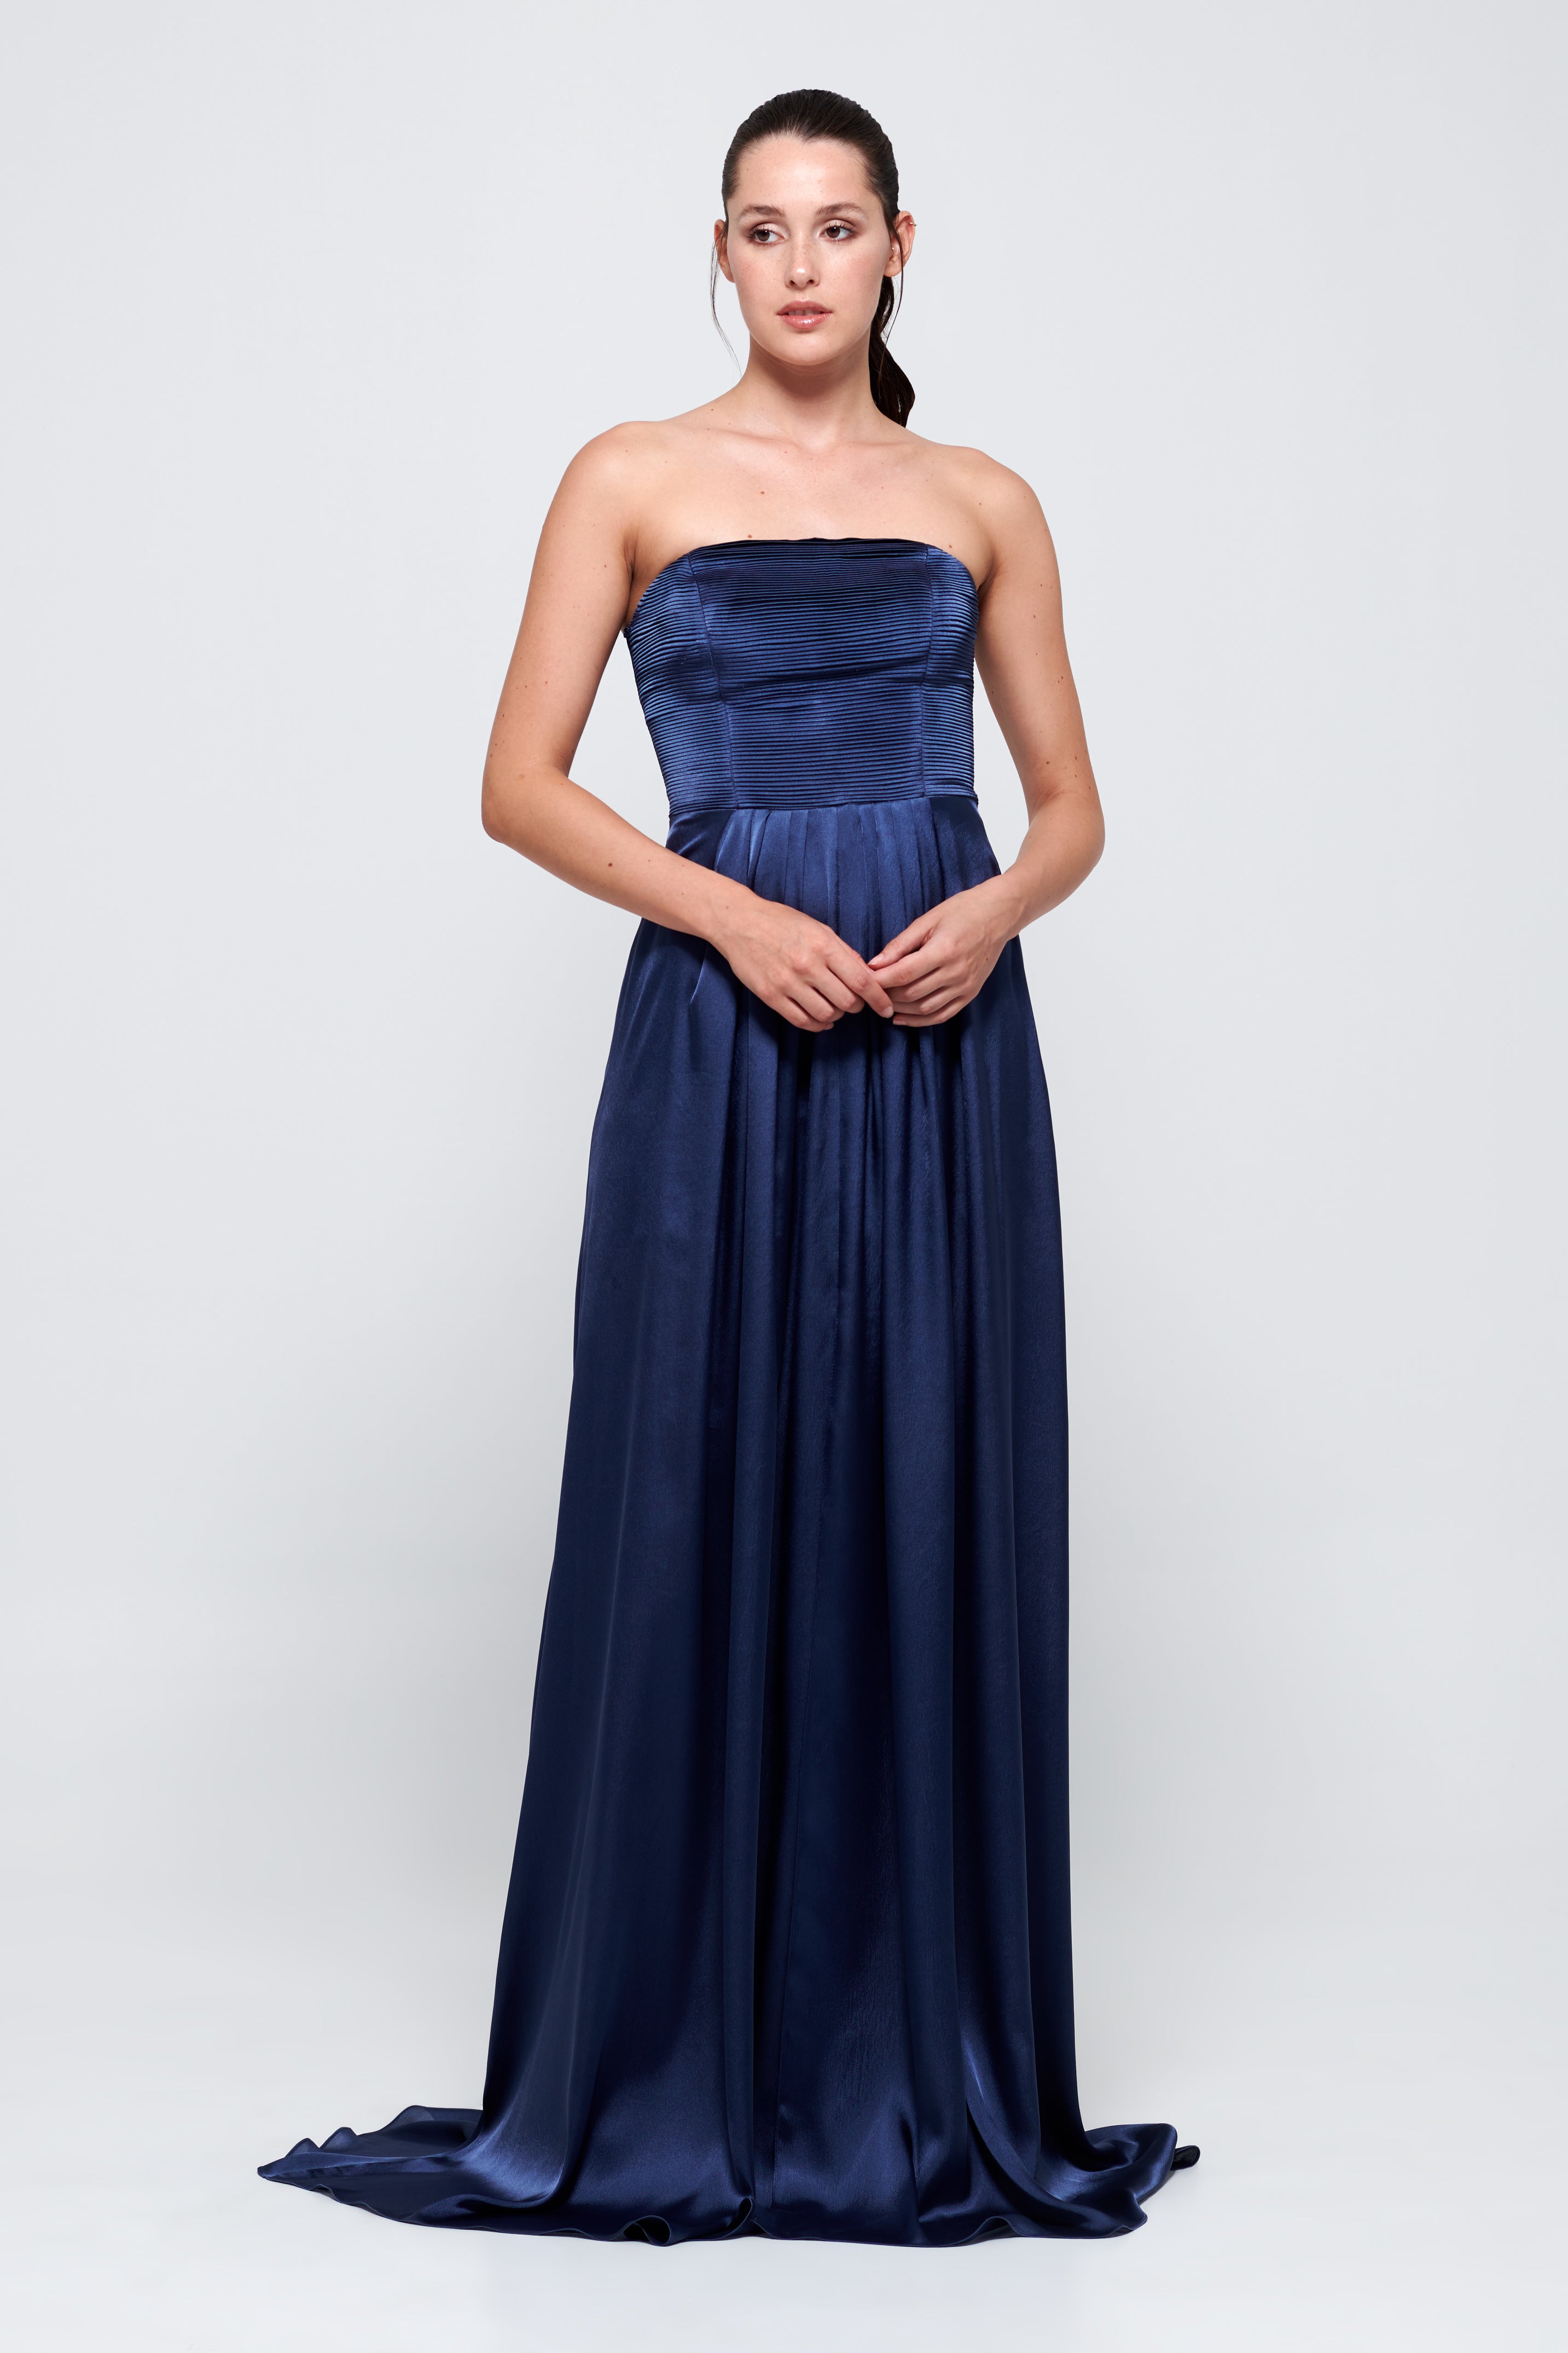 navy blue silk dress